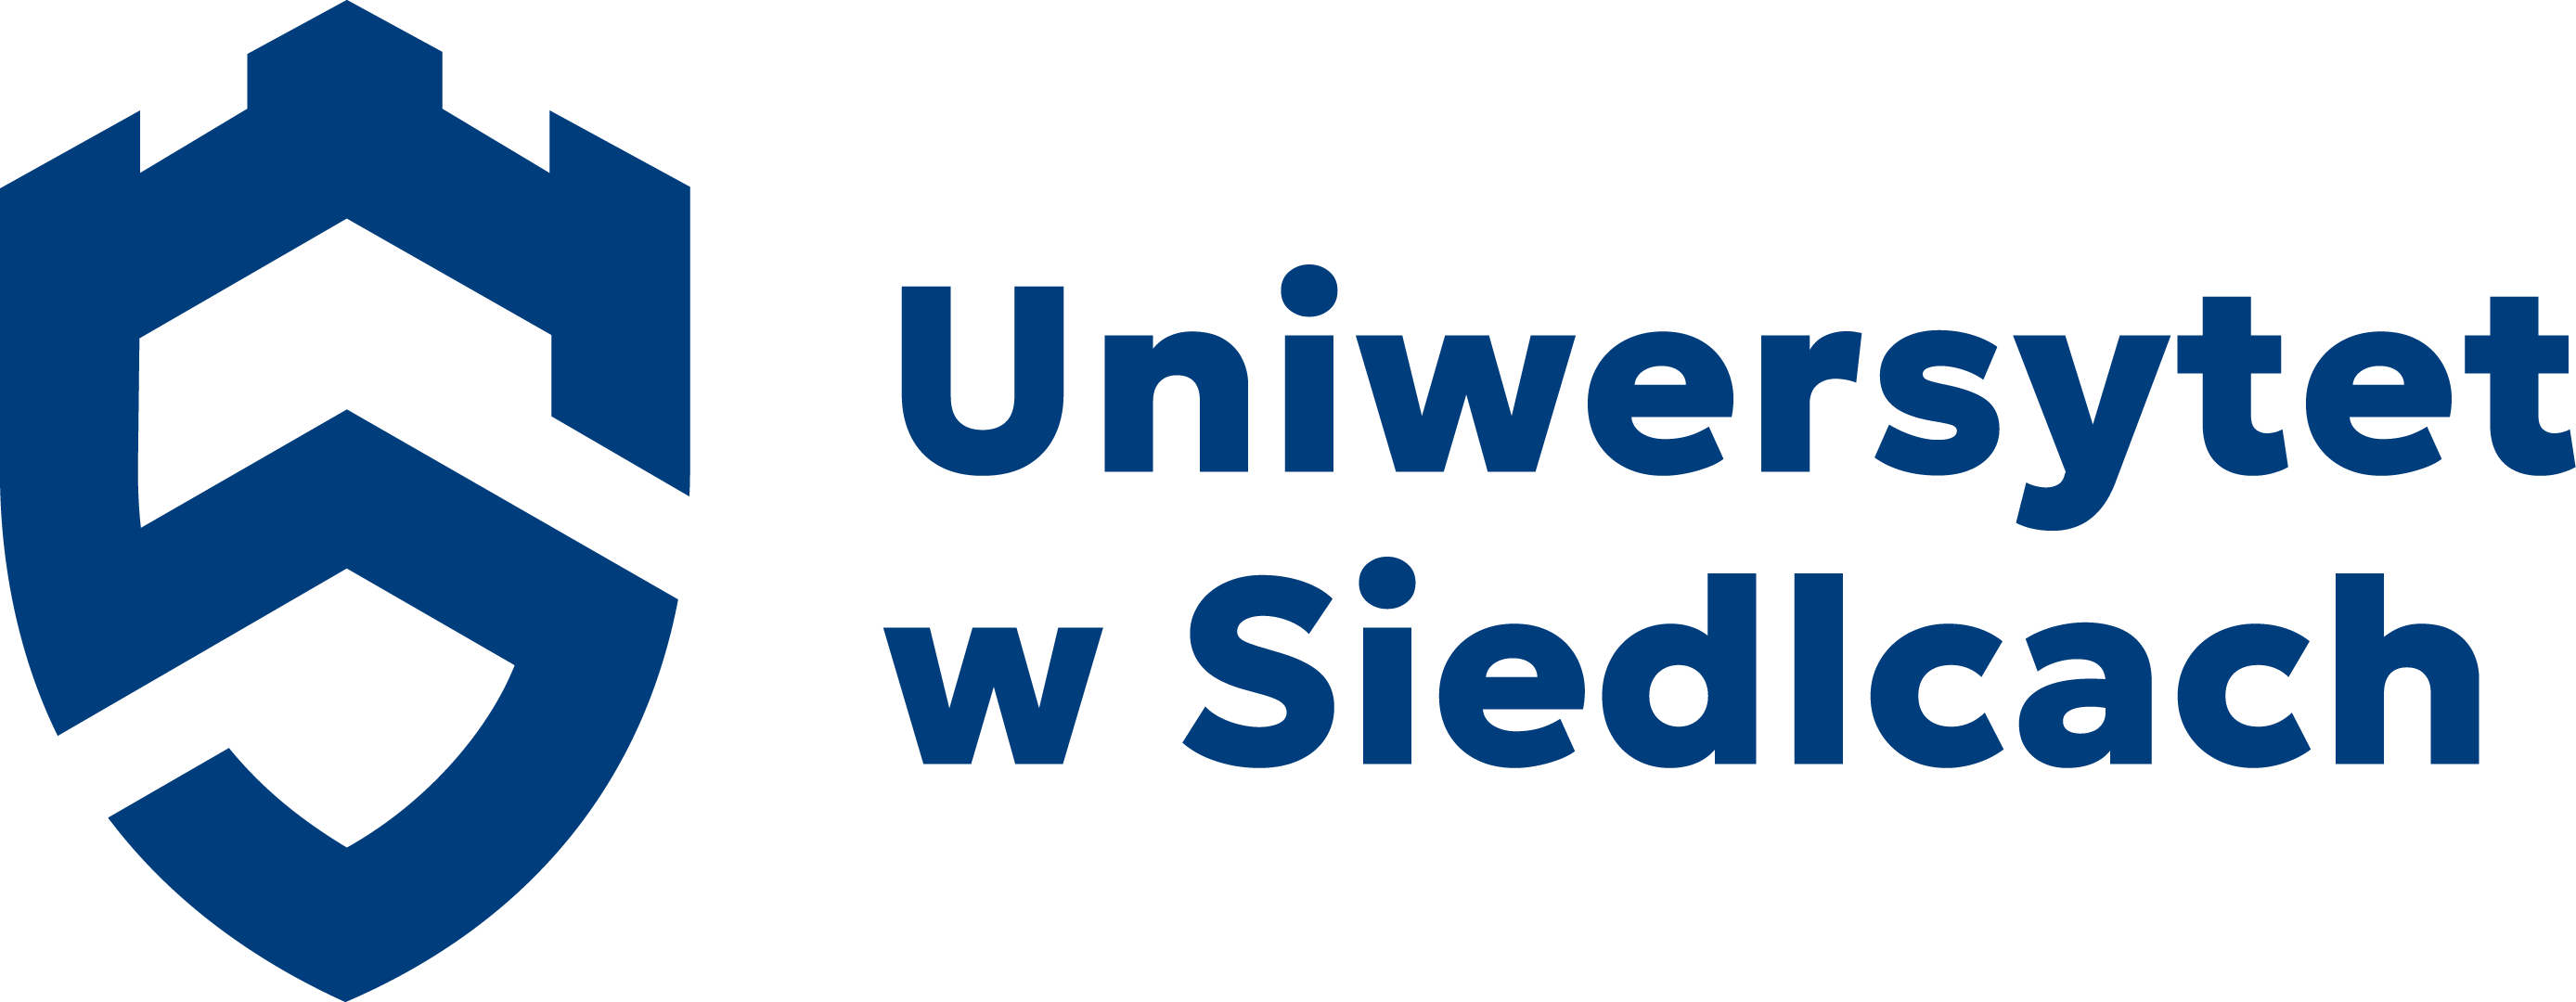 Uniwersytet w Siedlcach